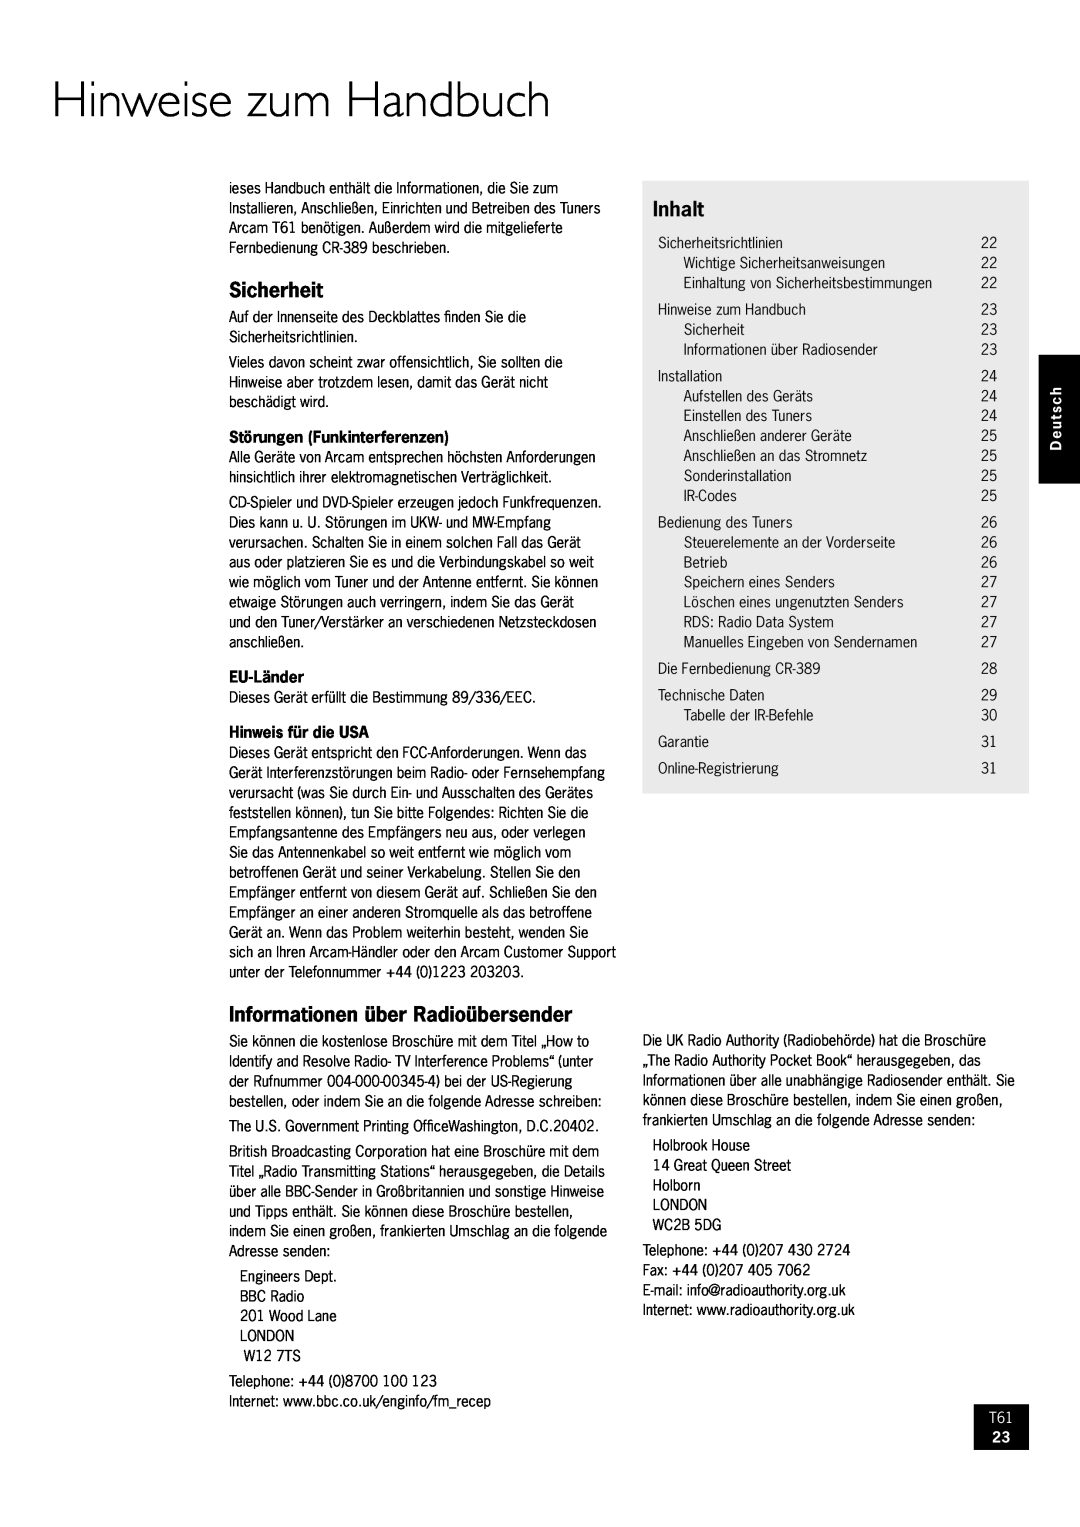 Arcam AM/FM Tuner T61 manual Hinweise zum Handbuch, Sicherheit, Inhalt, Informationen über Radioübersender, Deutsch 